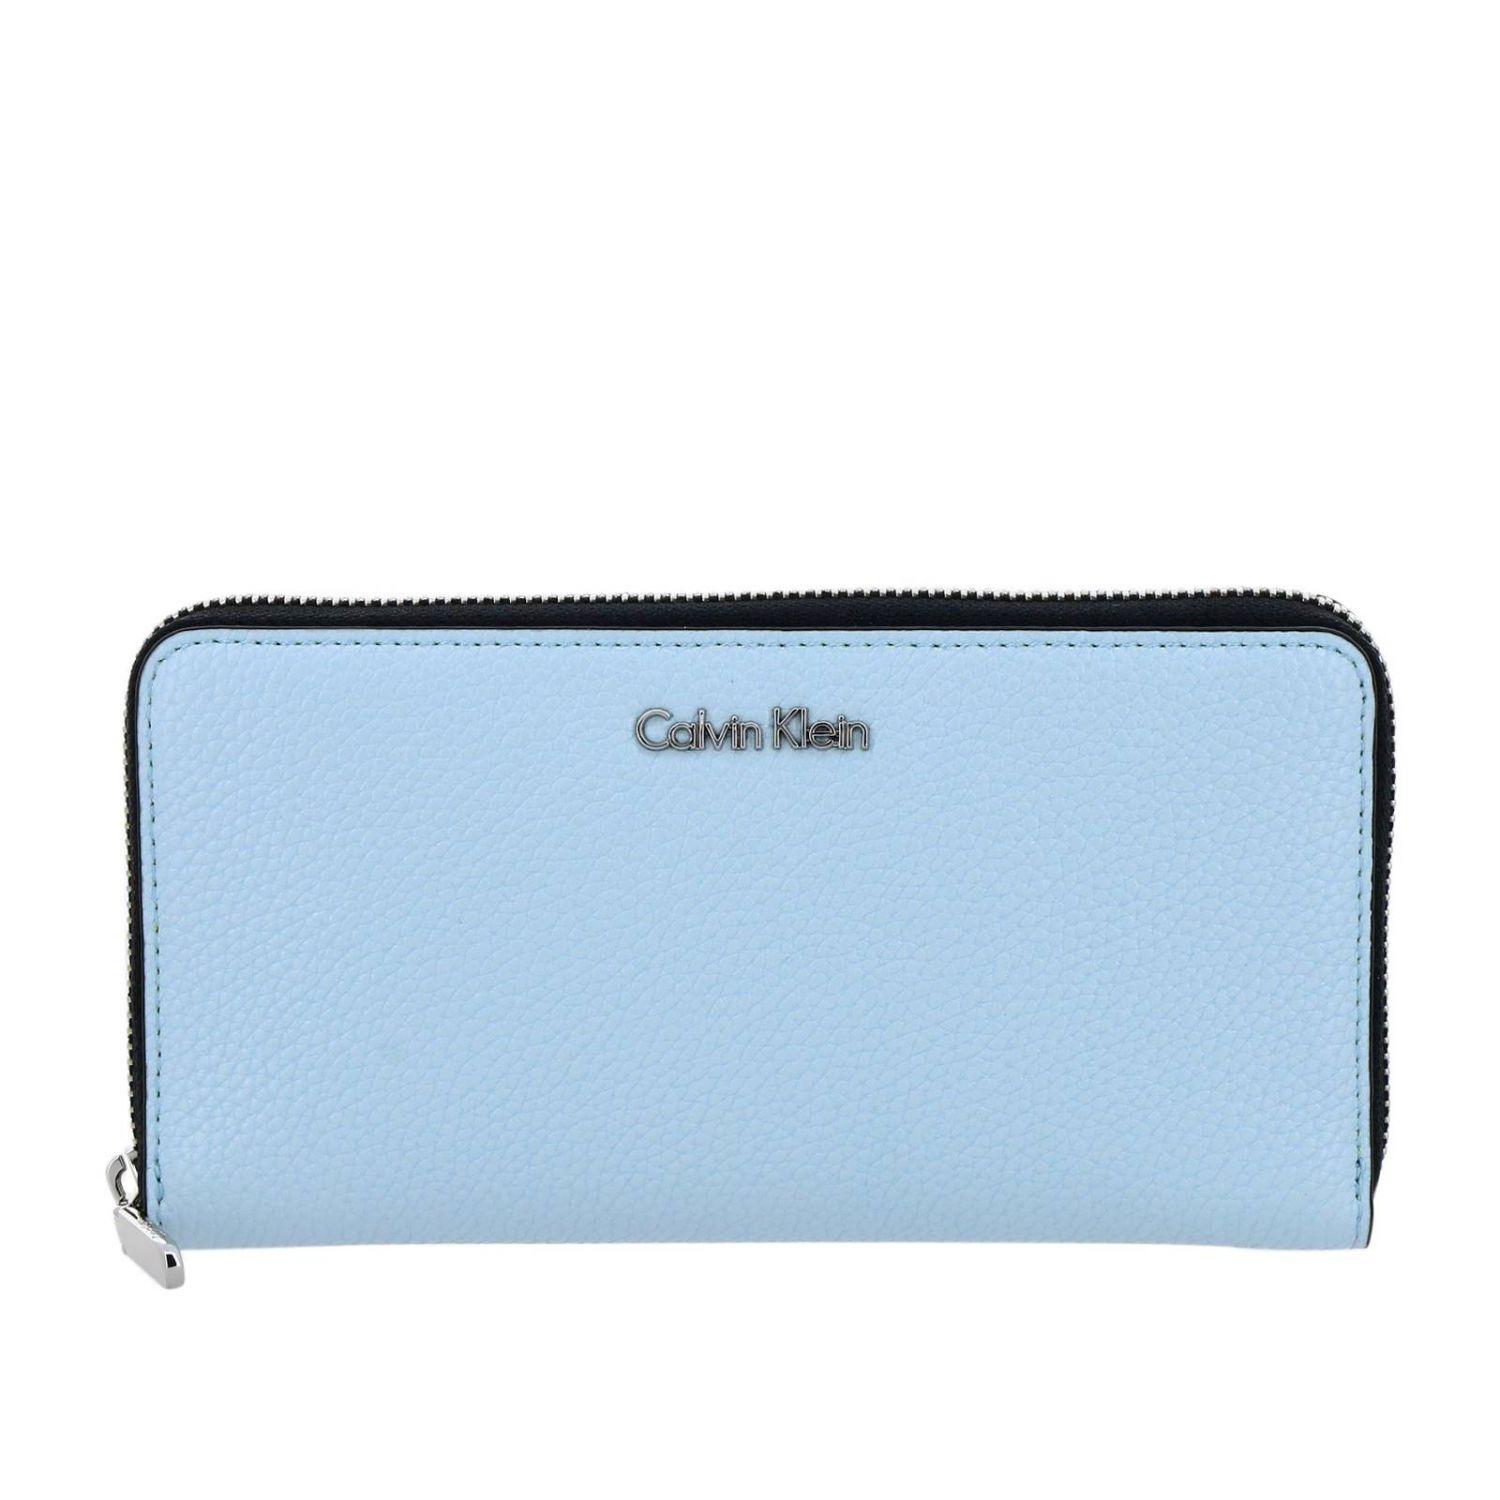 Calvin Klein Women's Wallet in Sky Blue (Blue) - Lyst